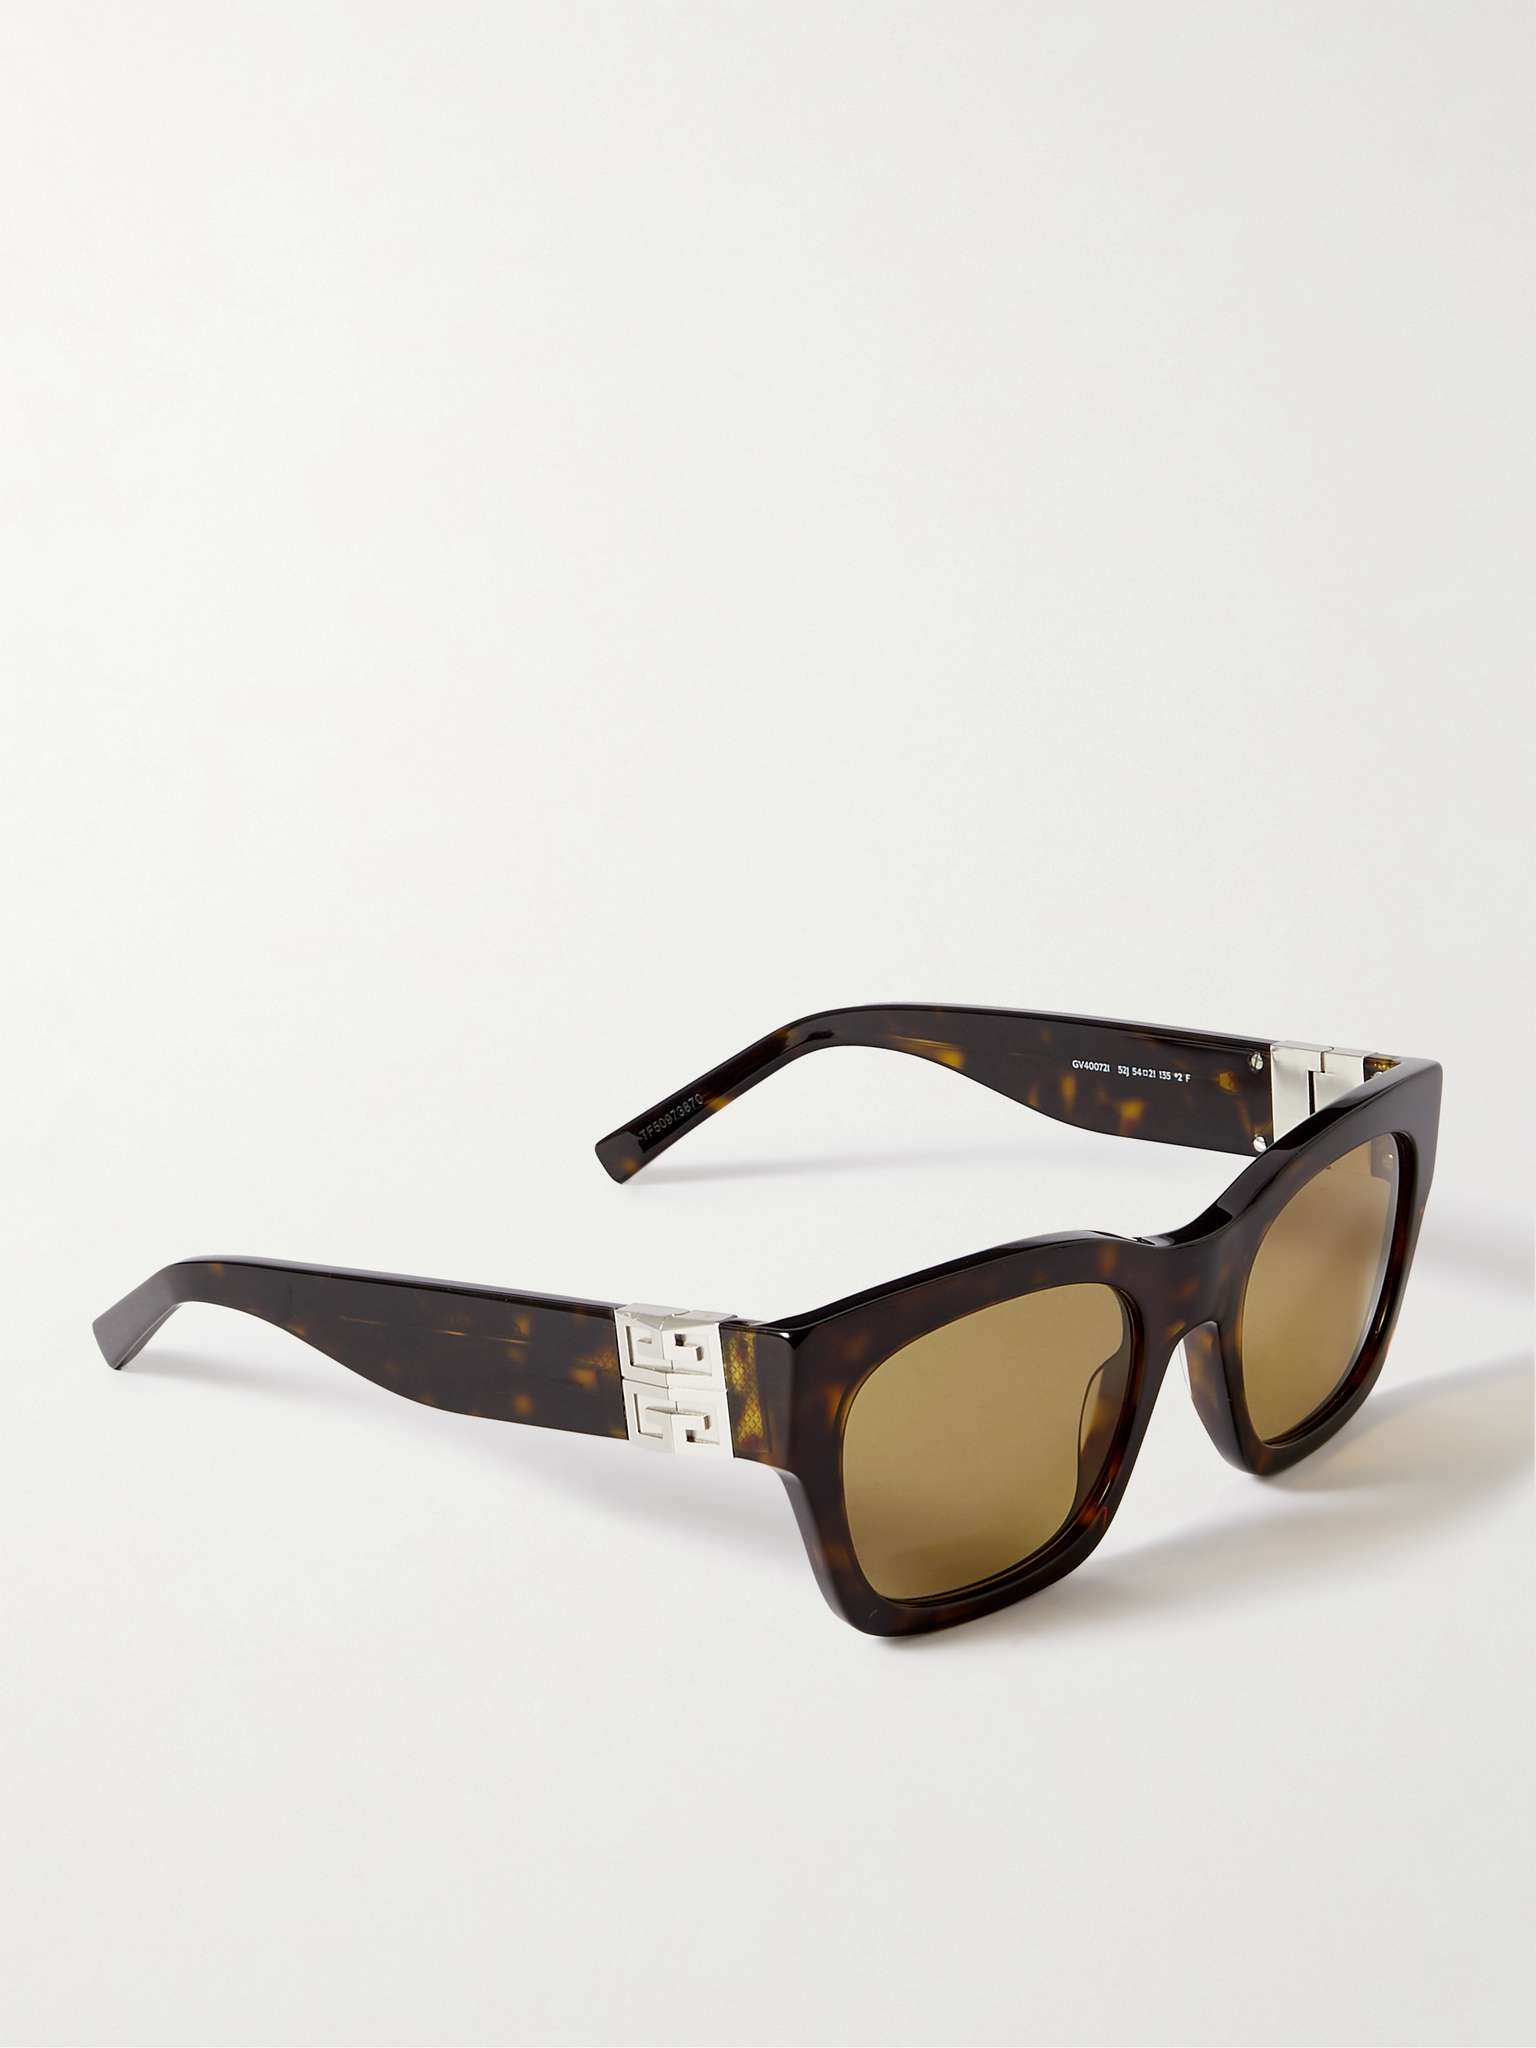 4G D-Frame Tortoiseshell Acetate Sunglasses - 3